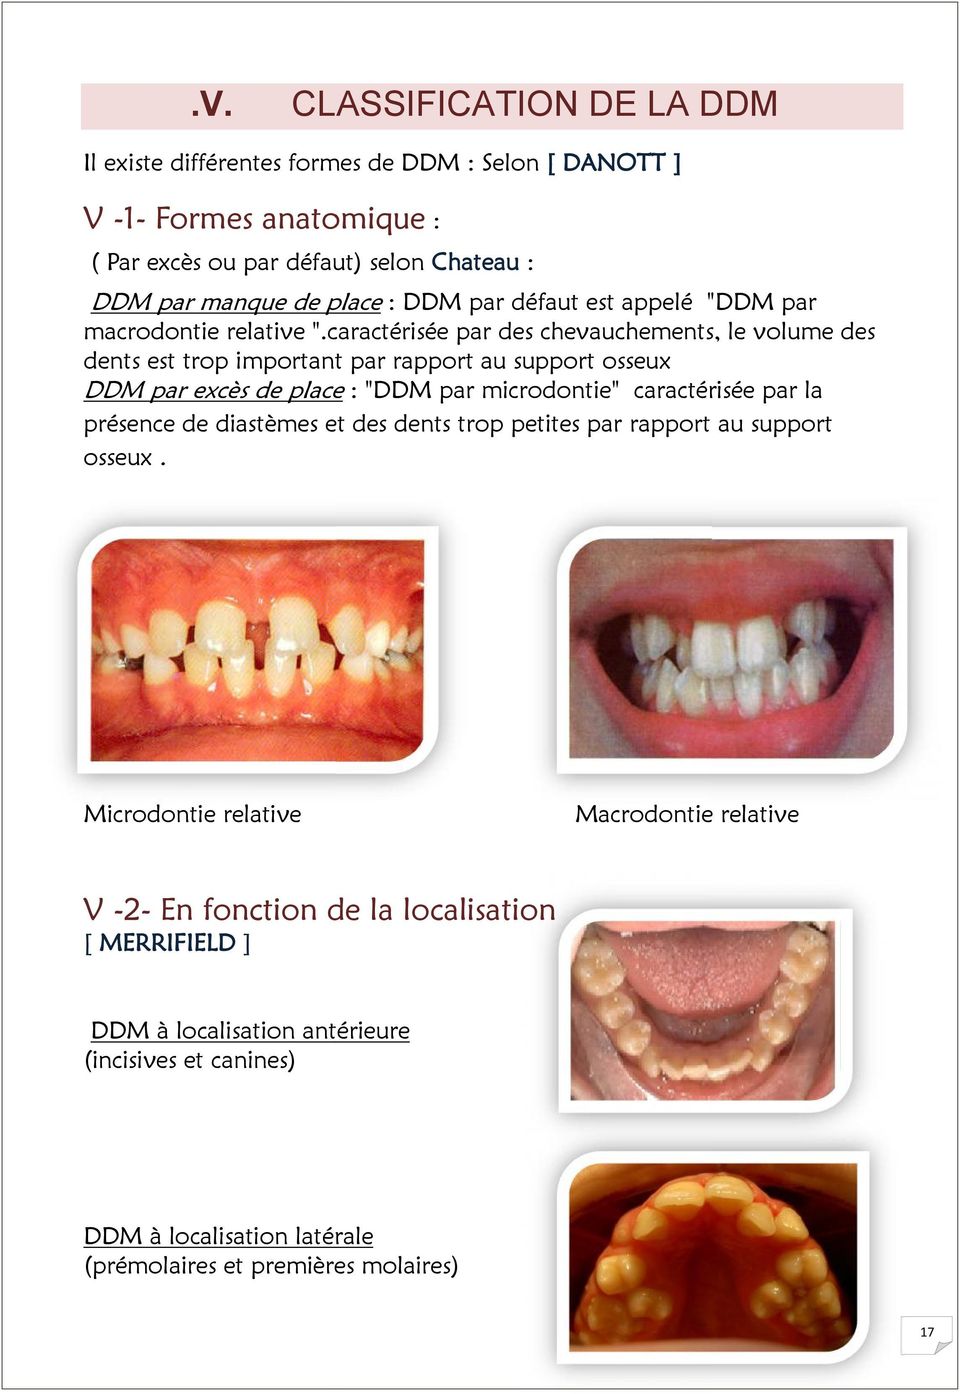 caractérisée par des chevauchements, le volume des dents est trop important par rapport au support osseux DDM par excès de place : "DDM par microdontie" caractérisée par la